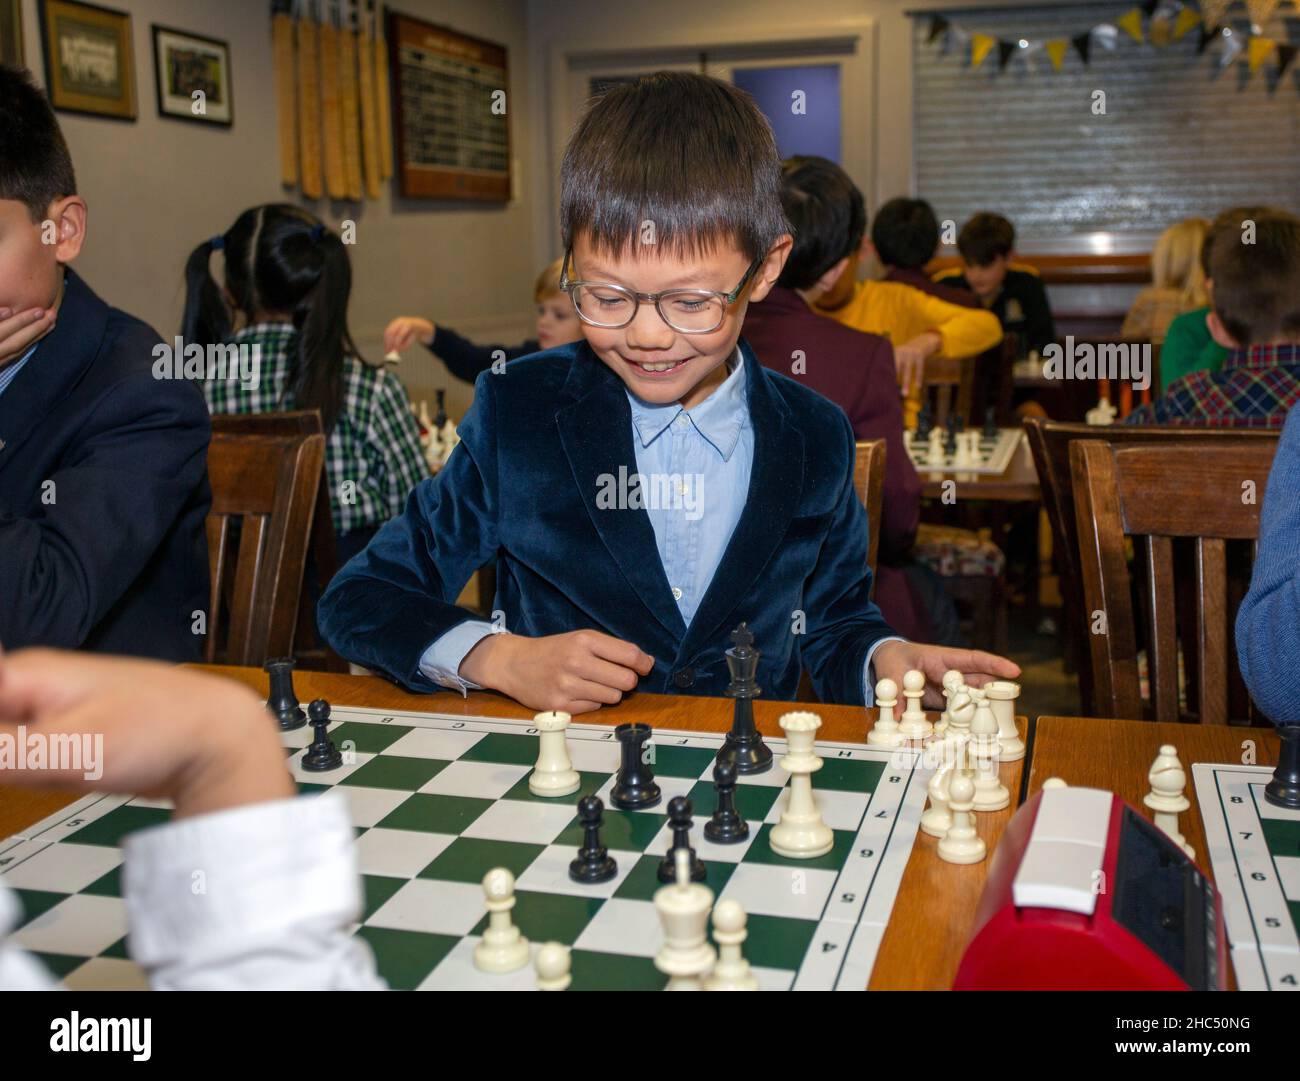 Giochi intelligenti. Un bambino gioca a scacchi. Ragazzo e scacchiera. Strategia. Pensiero logico. Foto Stock